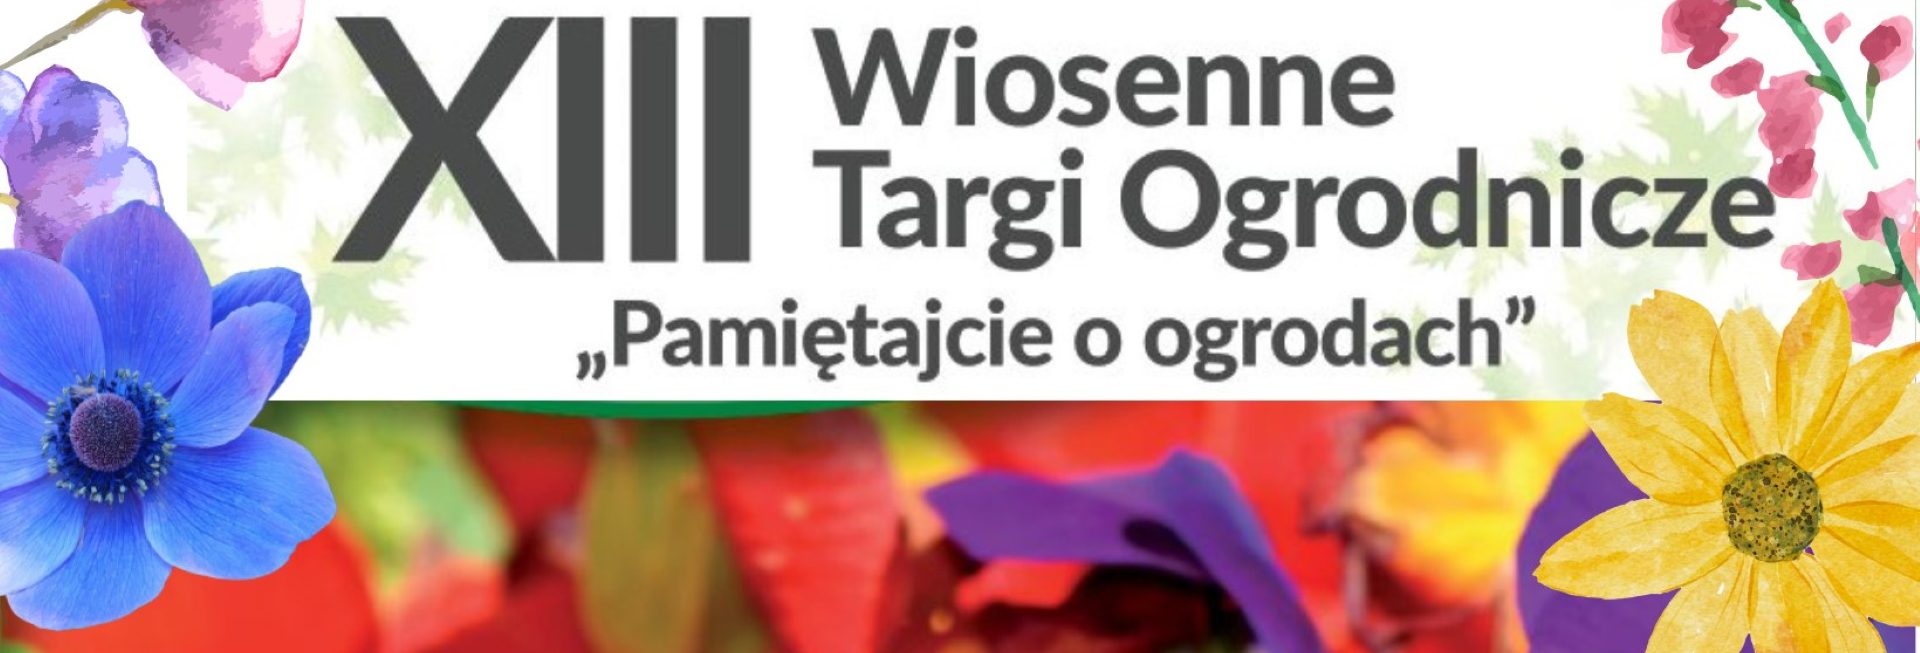 Plakat zapraszający w dniach 22-23 kwietnia 2023 r. do Olsztyna na 13. edycję Wiosennych Targów Ogrodniczych "Pamiętajcie o ogrodach" Olsztyn 2023.